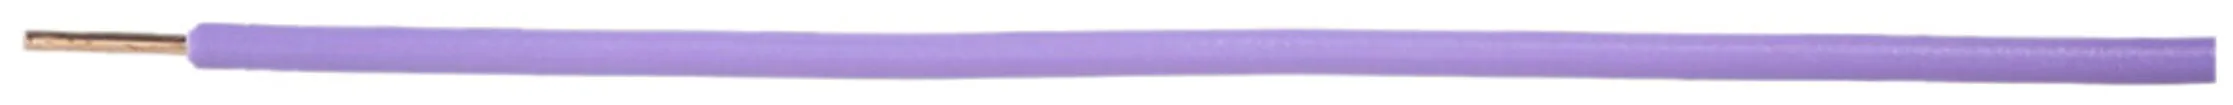 Fil N H07Z1-U sans halogène 1.5mm² 450/750V violet Cca 